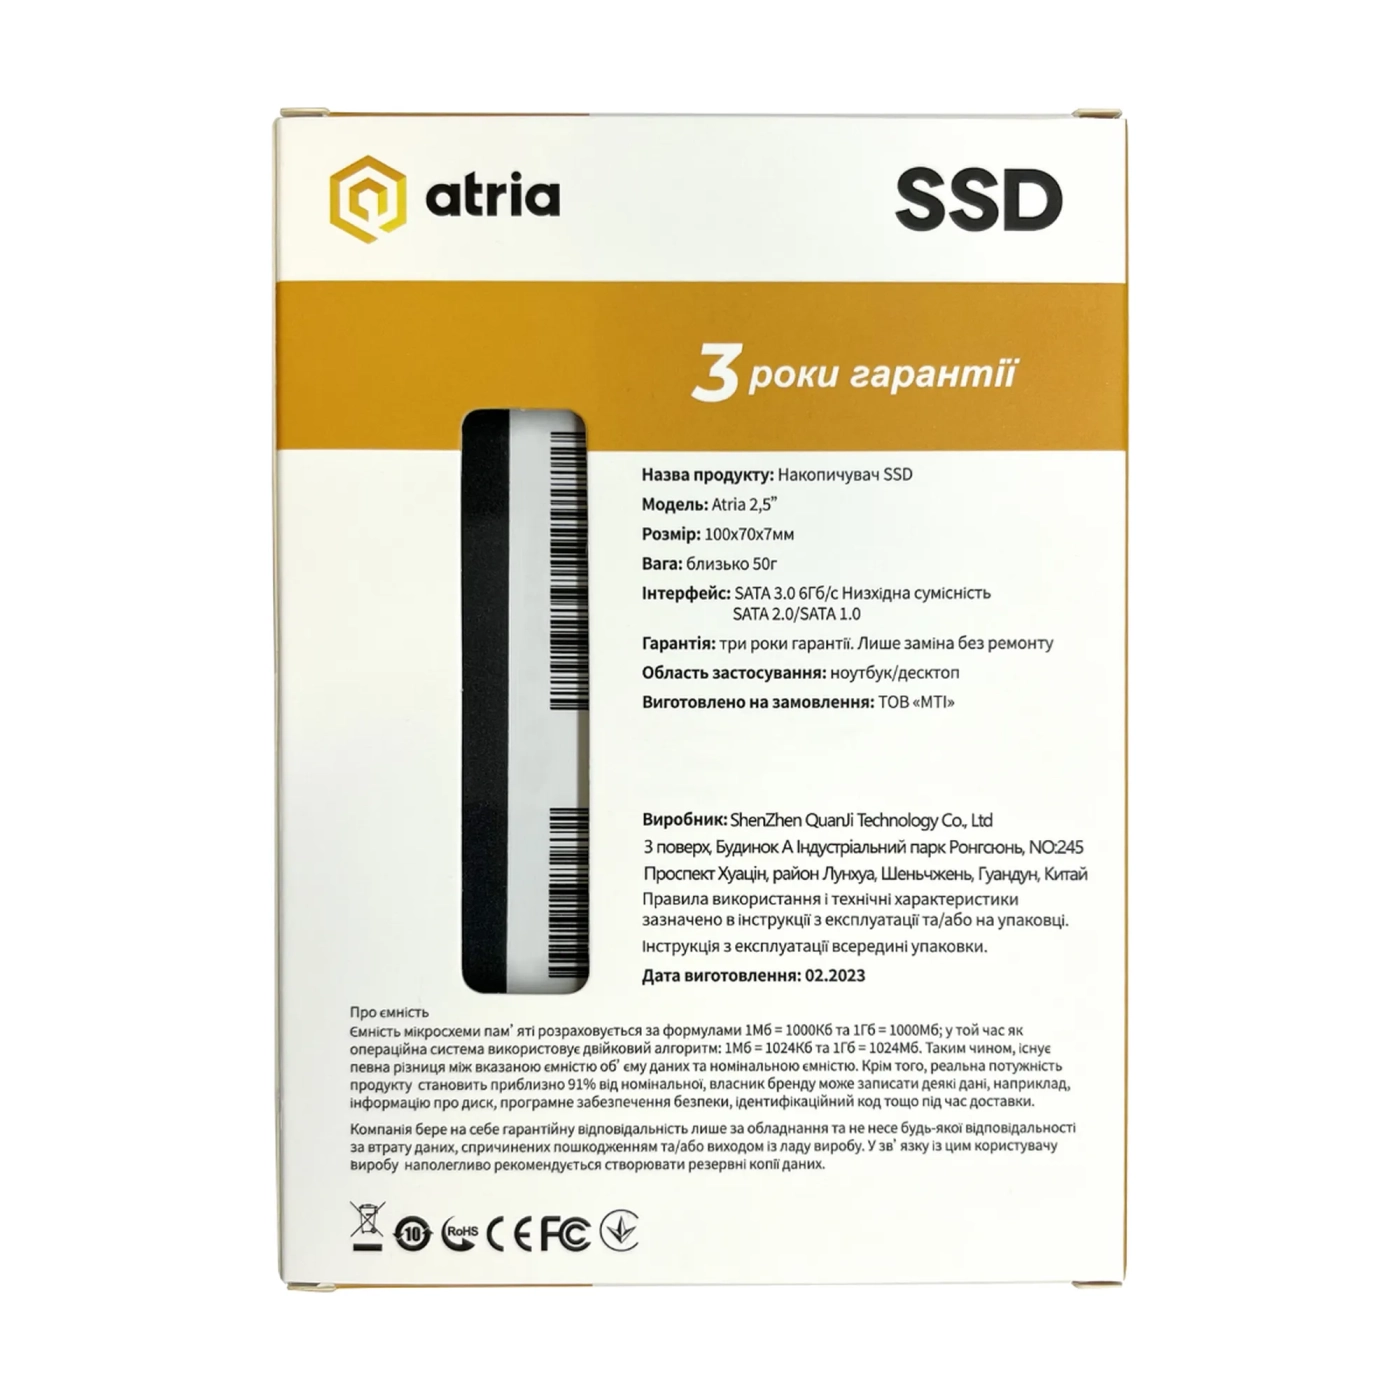 Купить SSD диск ATRIA XT200 480GB 2.5" (ATSATXT200/480) - фото 4